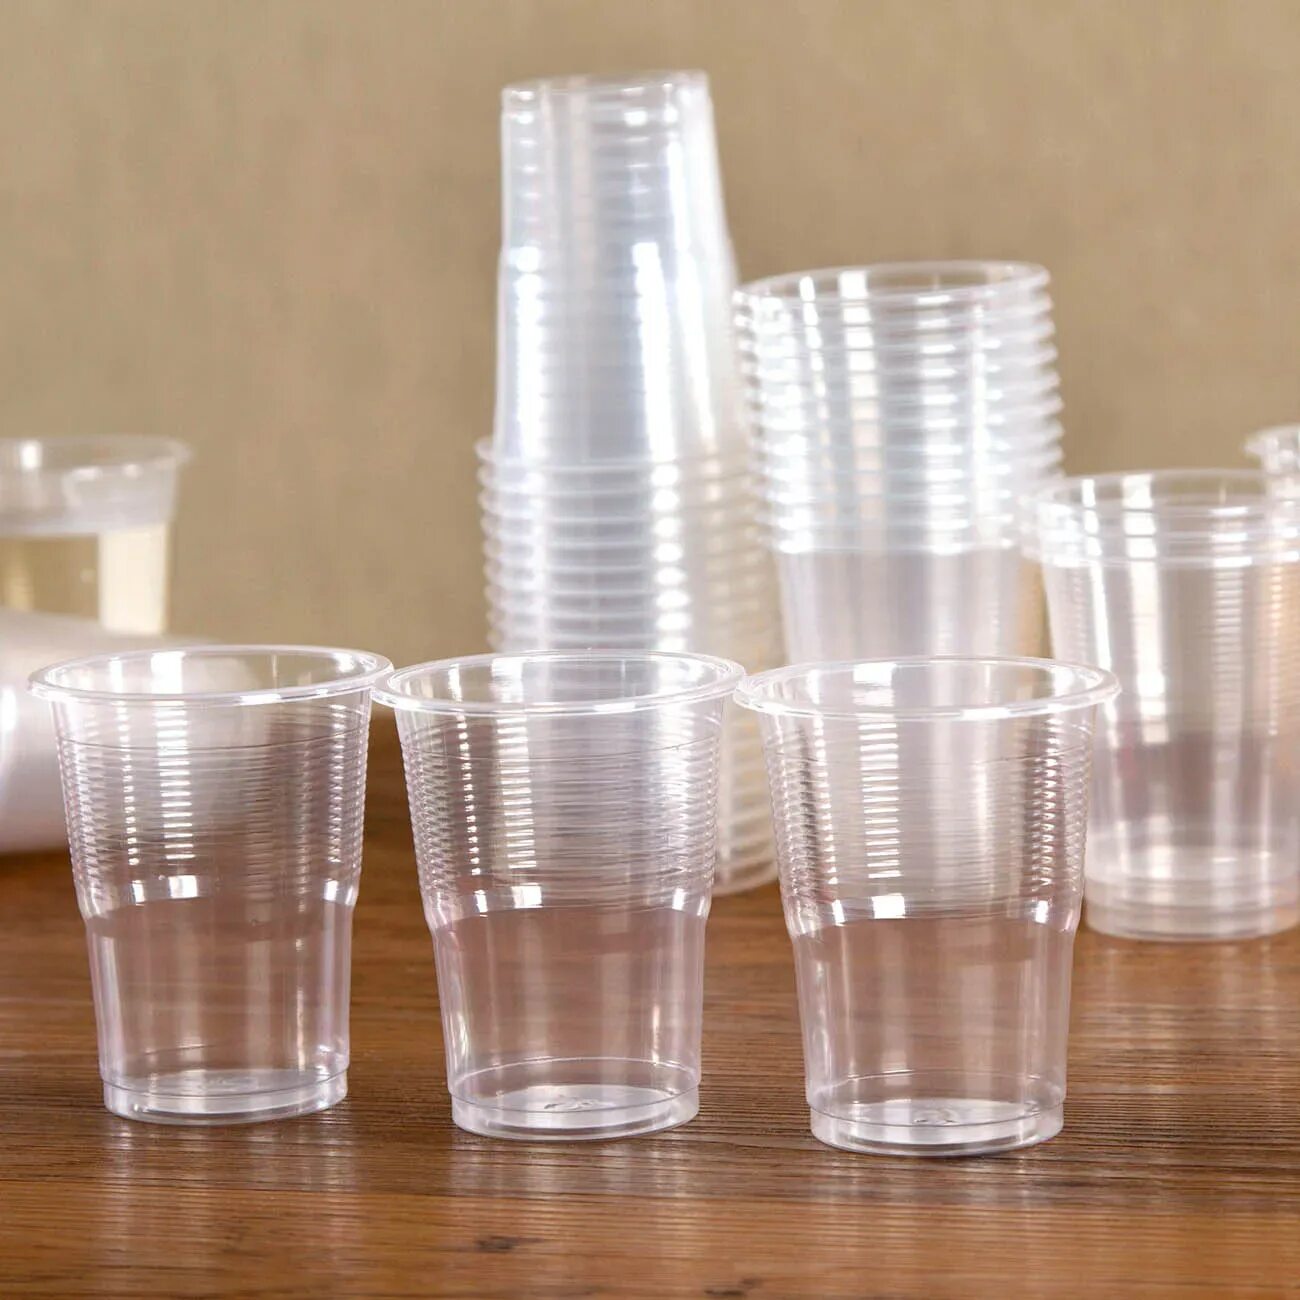 Купить стакан прозрачный. Шот Кристалл пластик прозрачный. Стаканчик пластиковый. Пластиковые стаканчики прозрачные. Стаканчики прозрачные одноразовые.